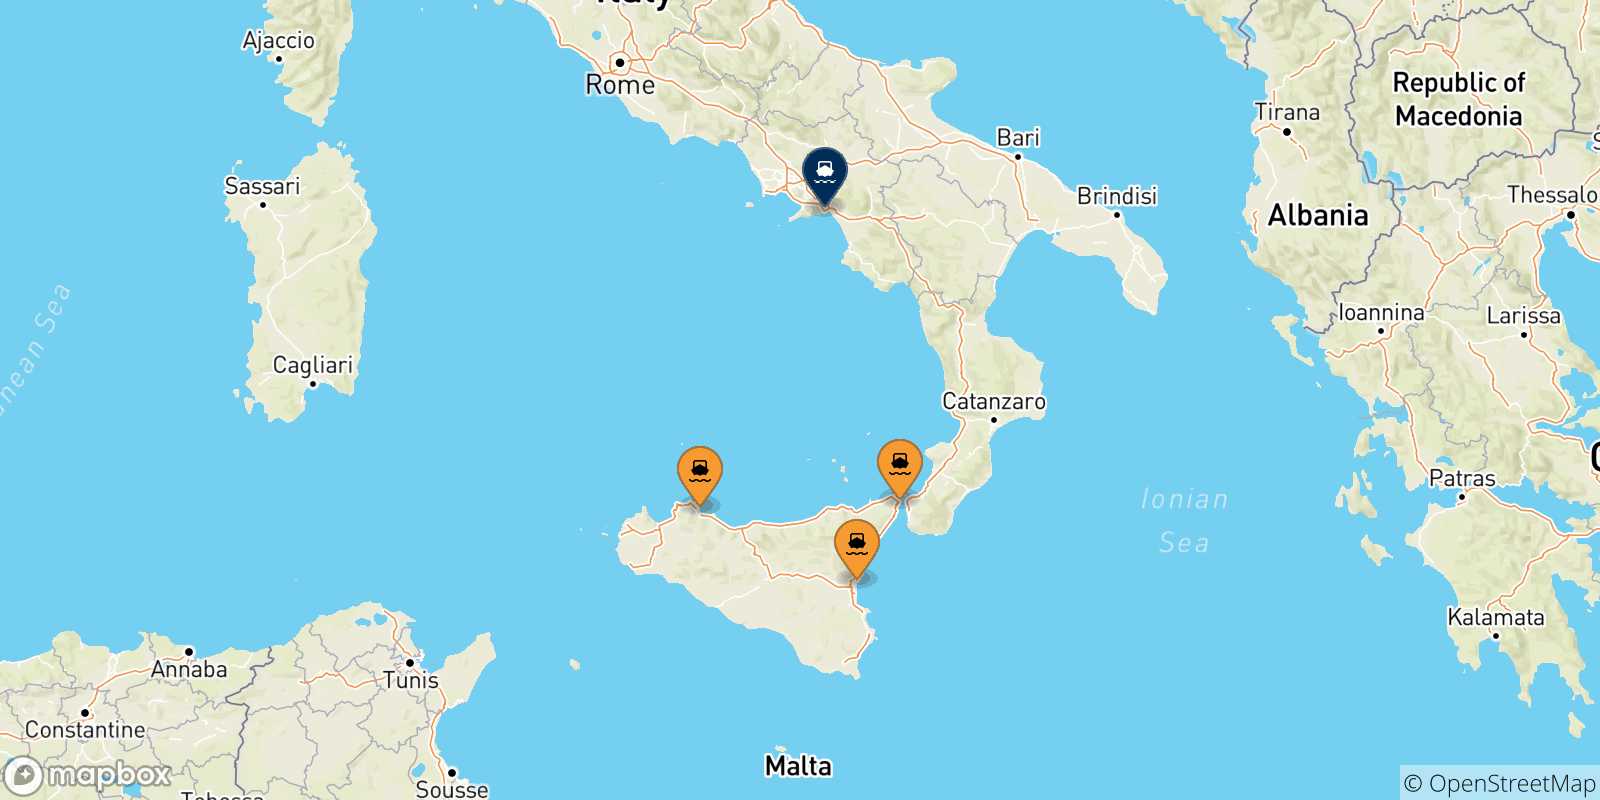 Mappa delle possibili rotte tra la Sicilia e Salerno